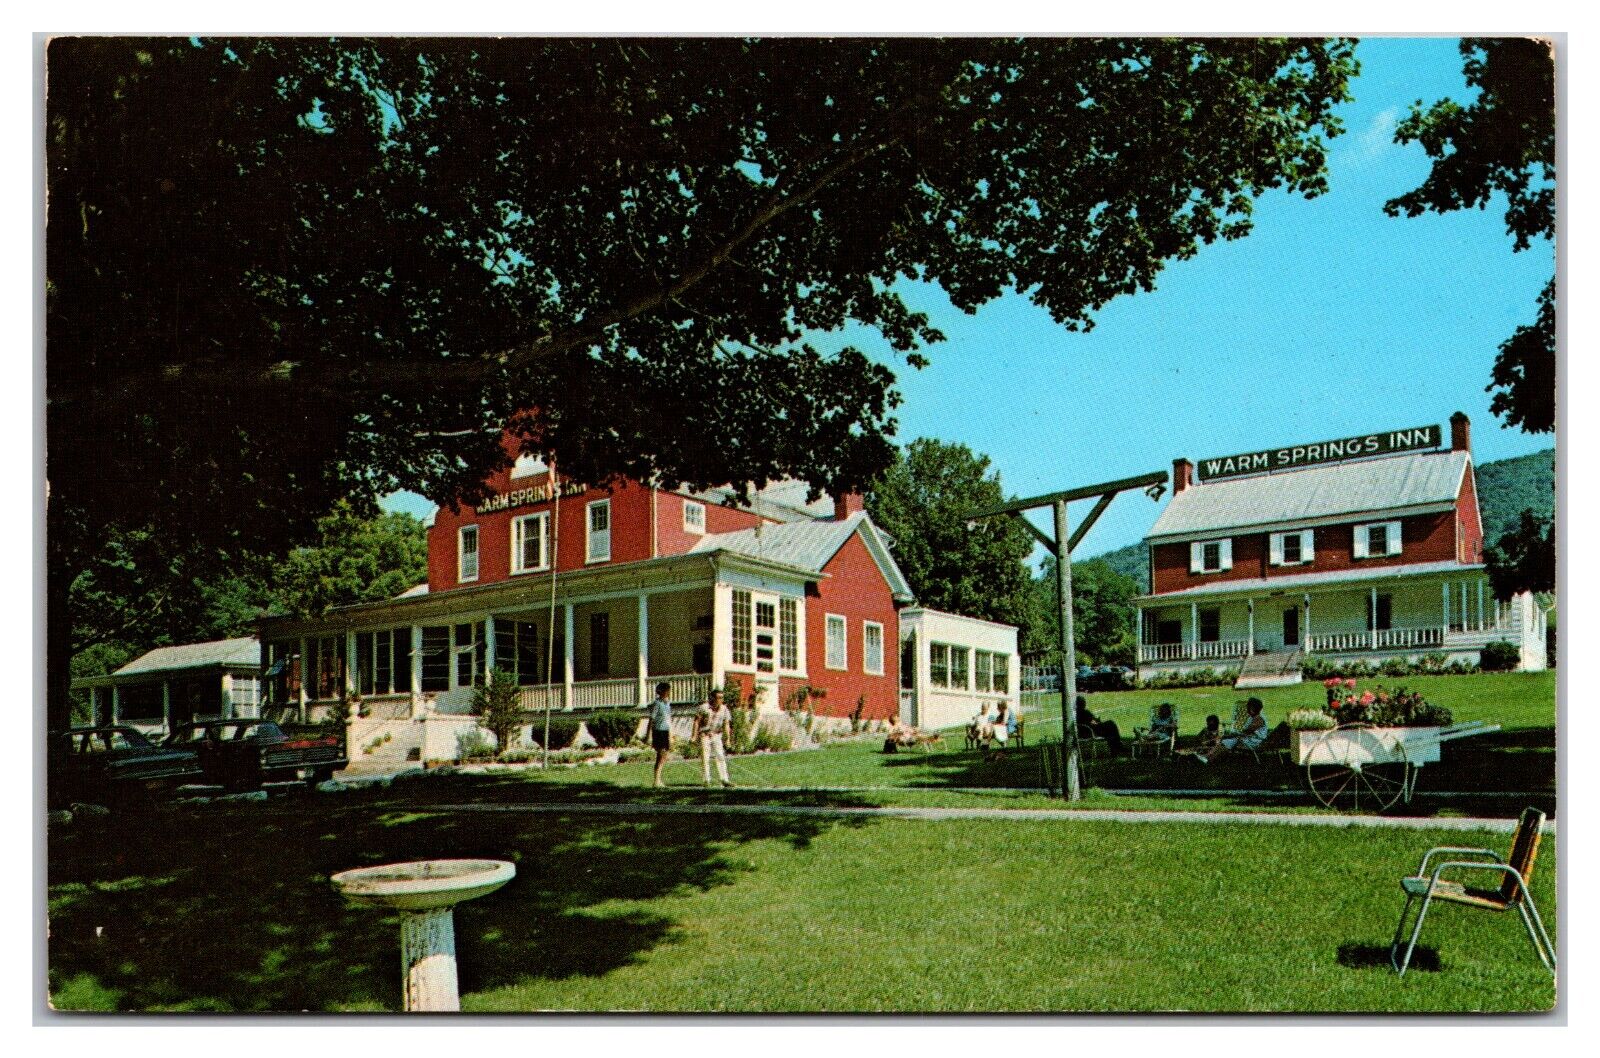 Warm Springs Inn, Warm Springs Virginia Postcard